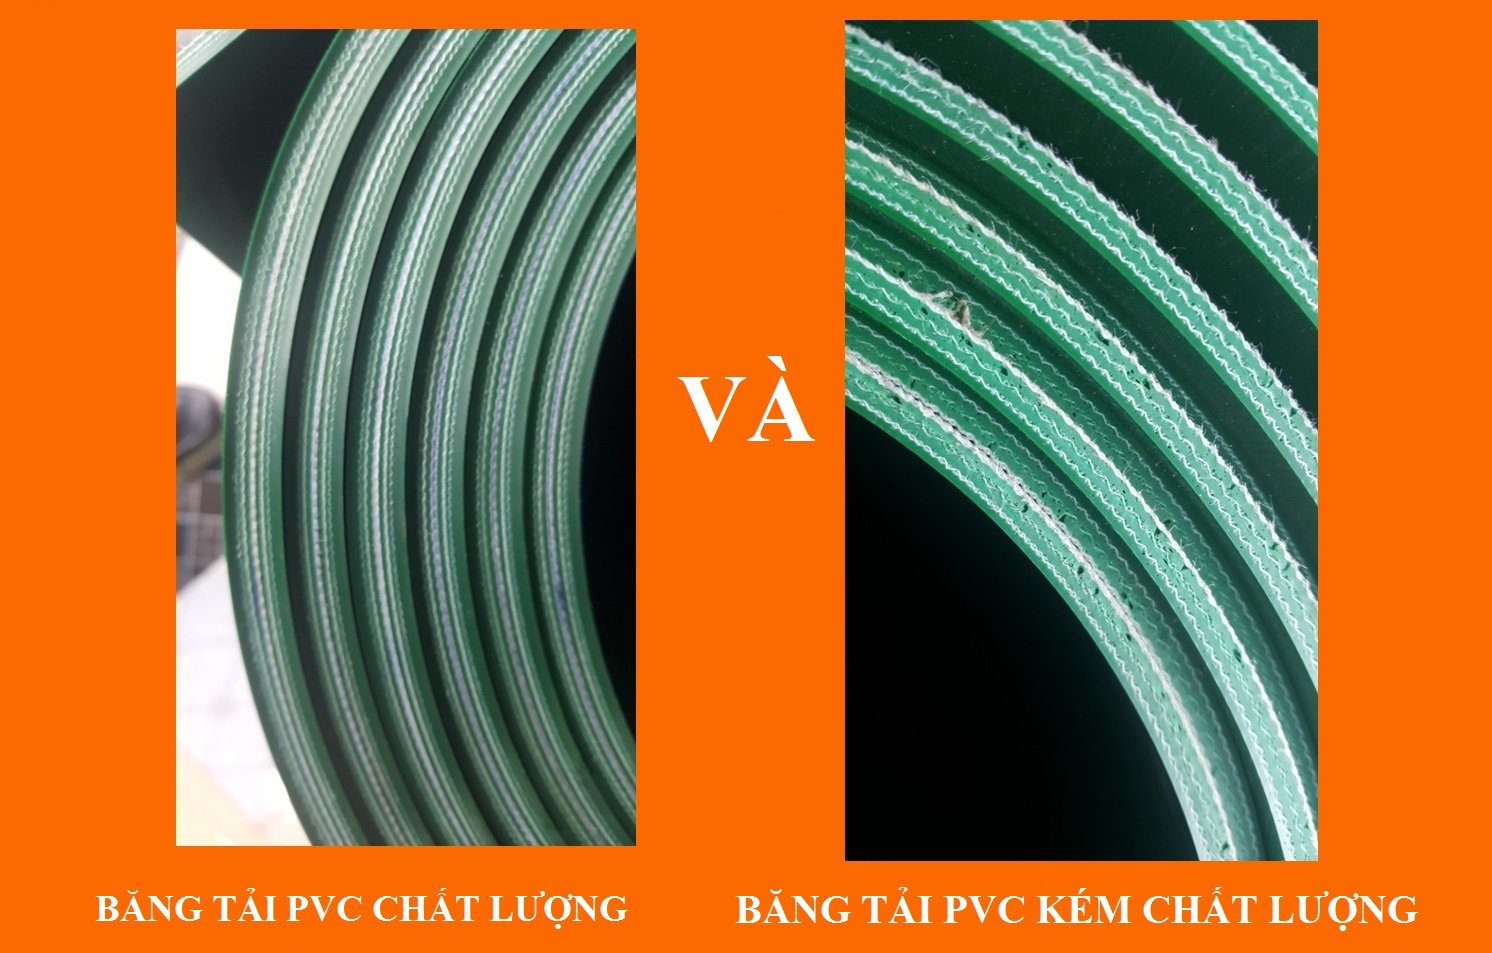 Băng tải PVC chất lượng và băng tải PVC kèm chất lượng